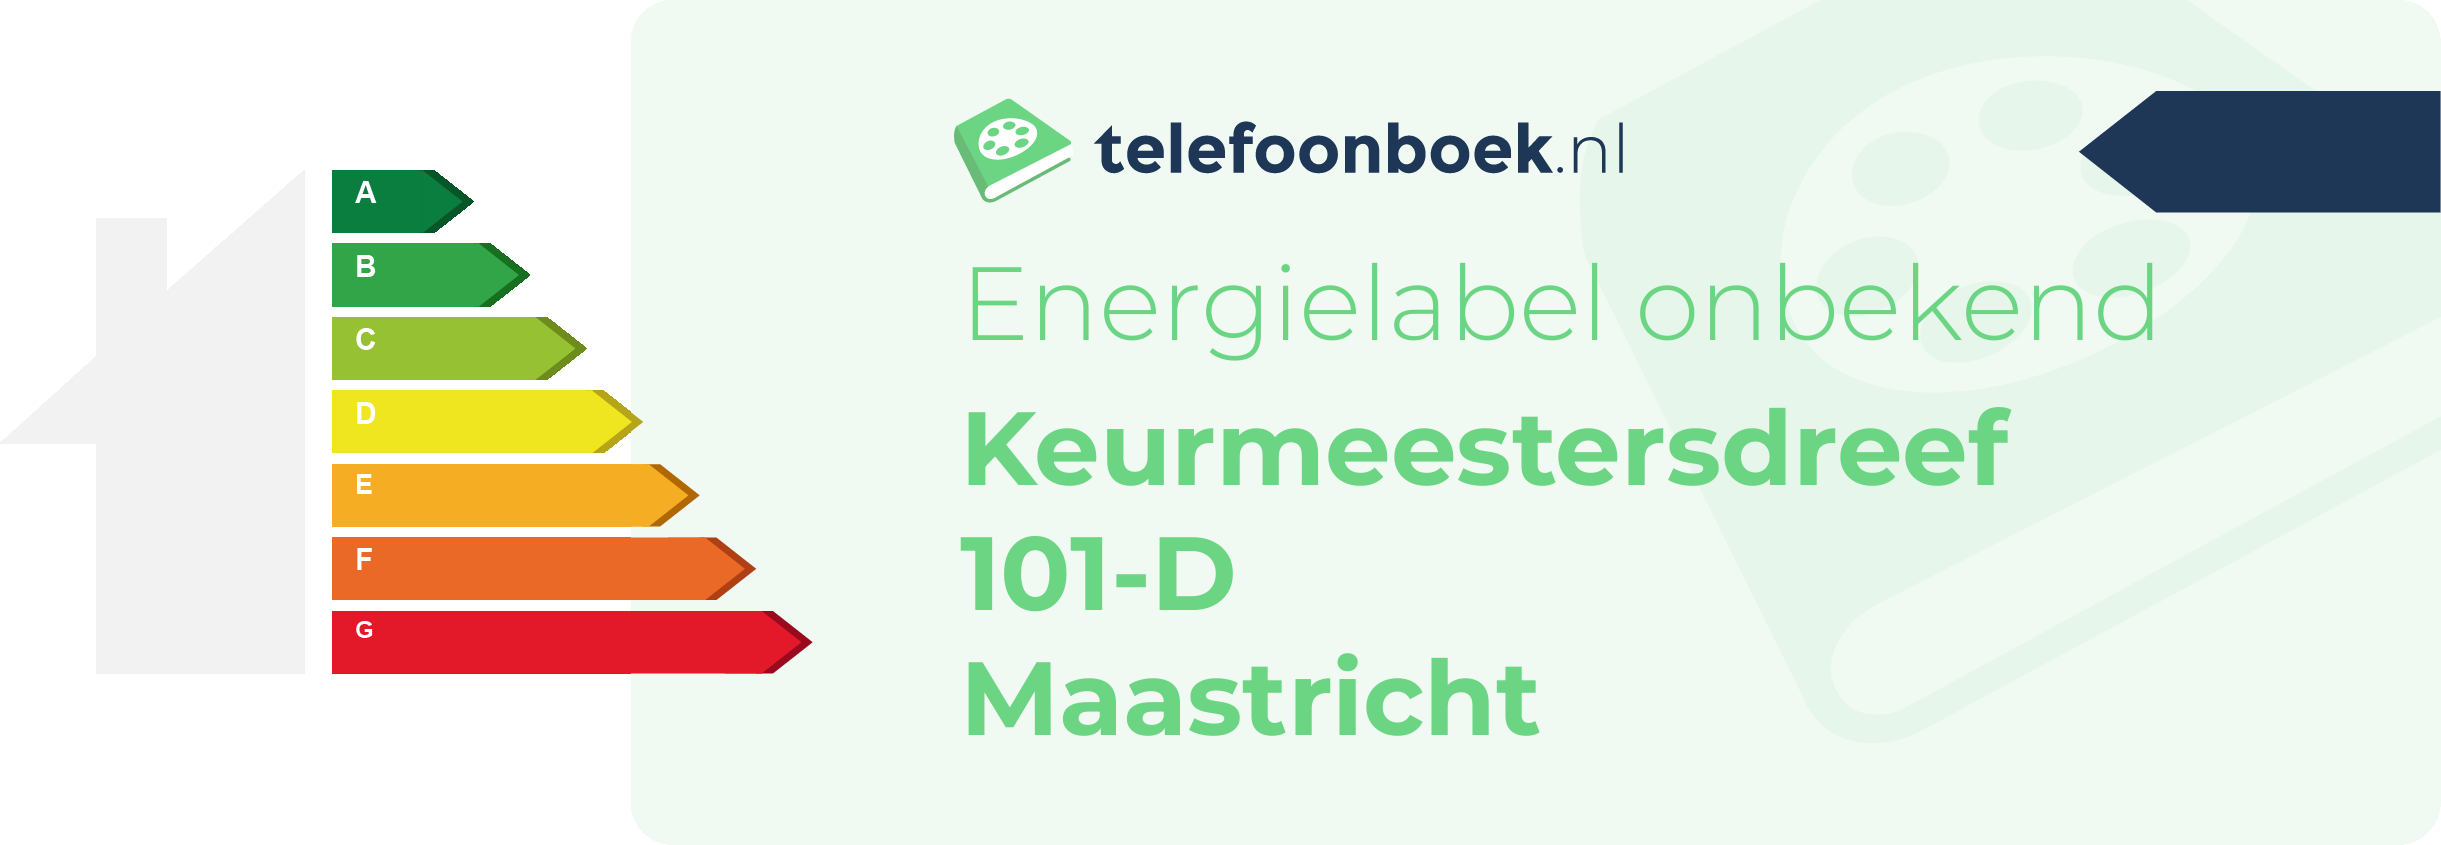 Energielabel Keurmeestersdreef 101-D Maastricht